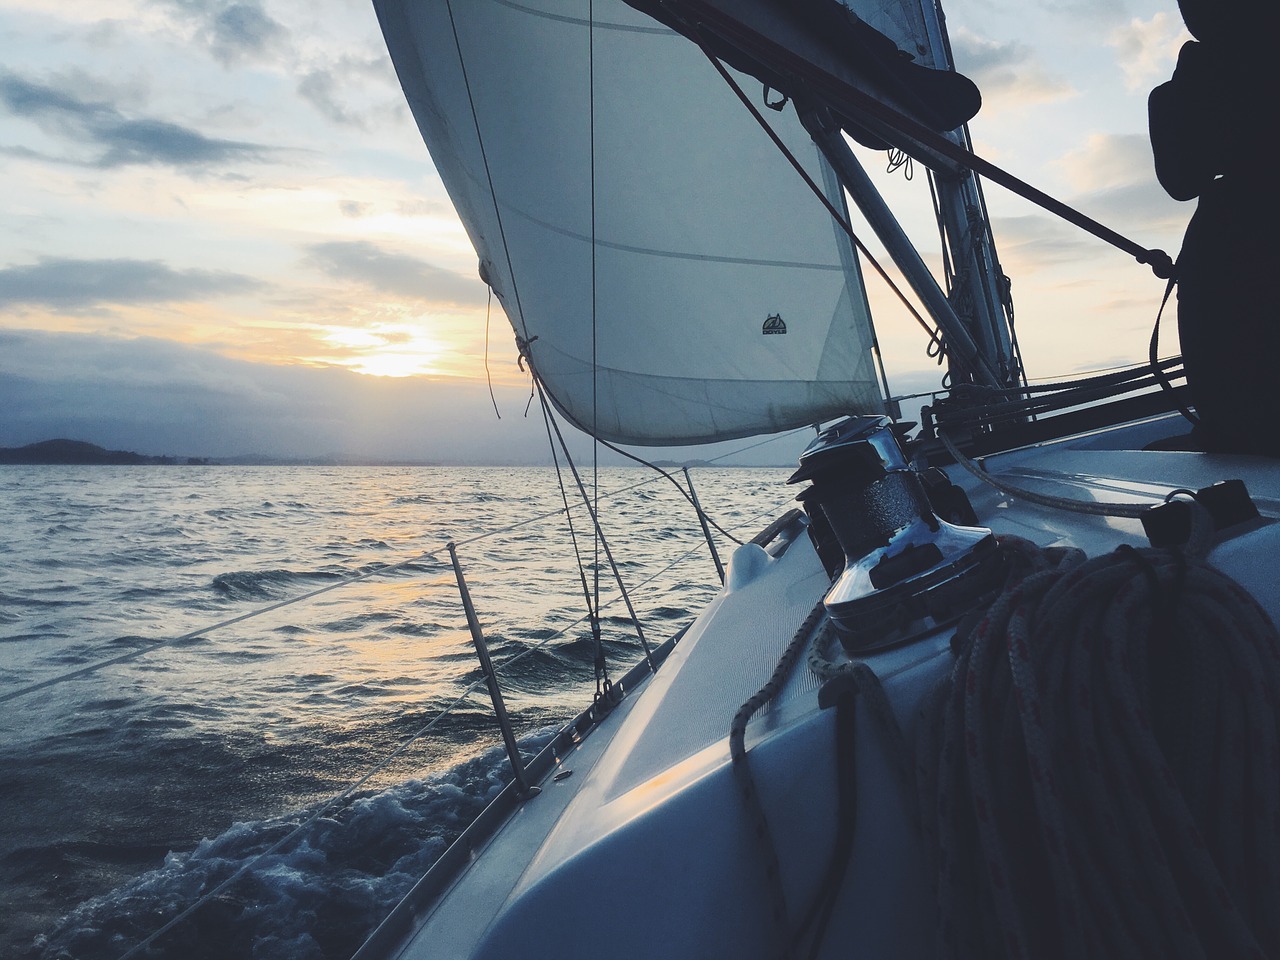 Sailsquare, la startup dei viaggi in barca a vela, raccoglie altri 1,3 milioni